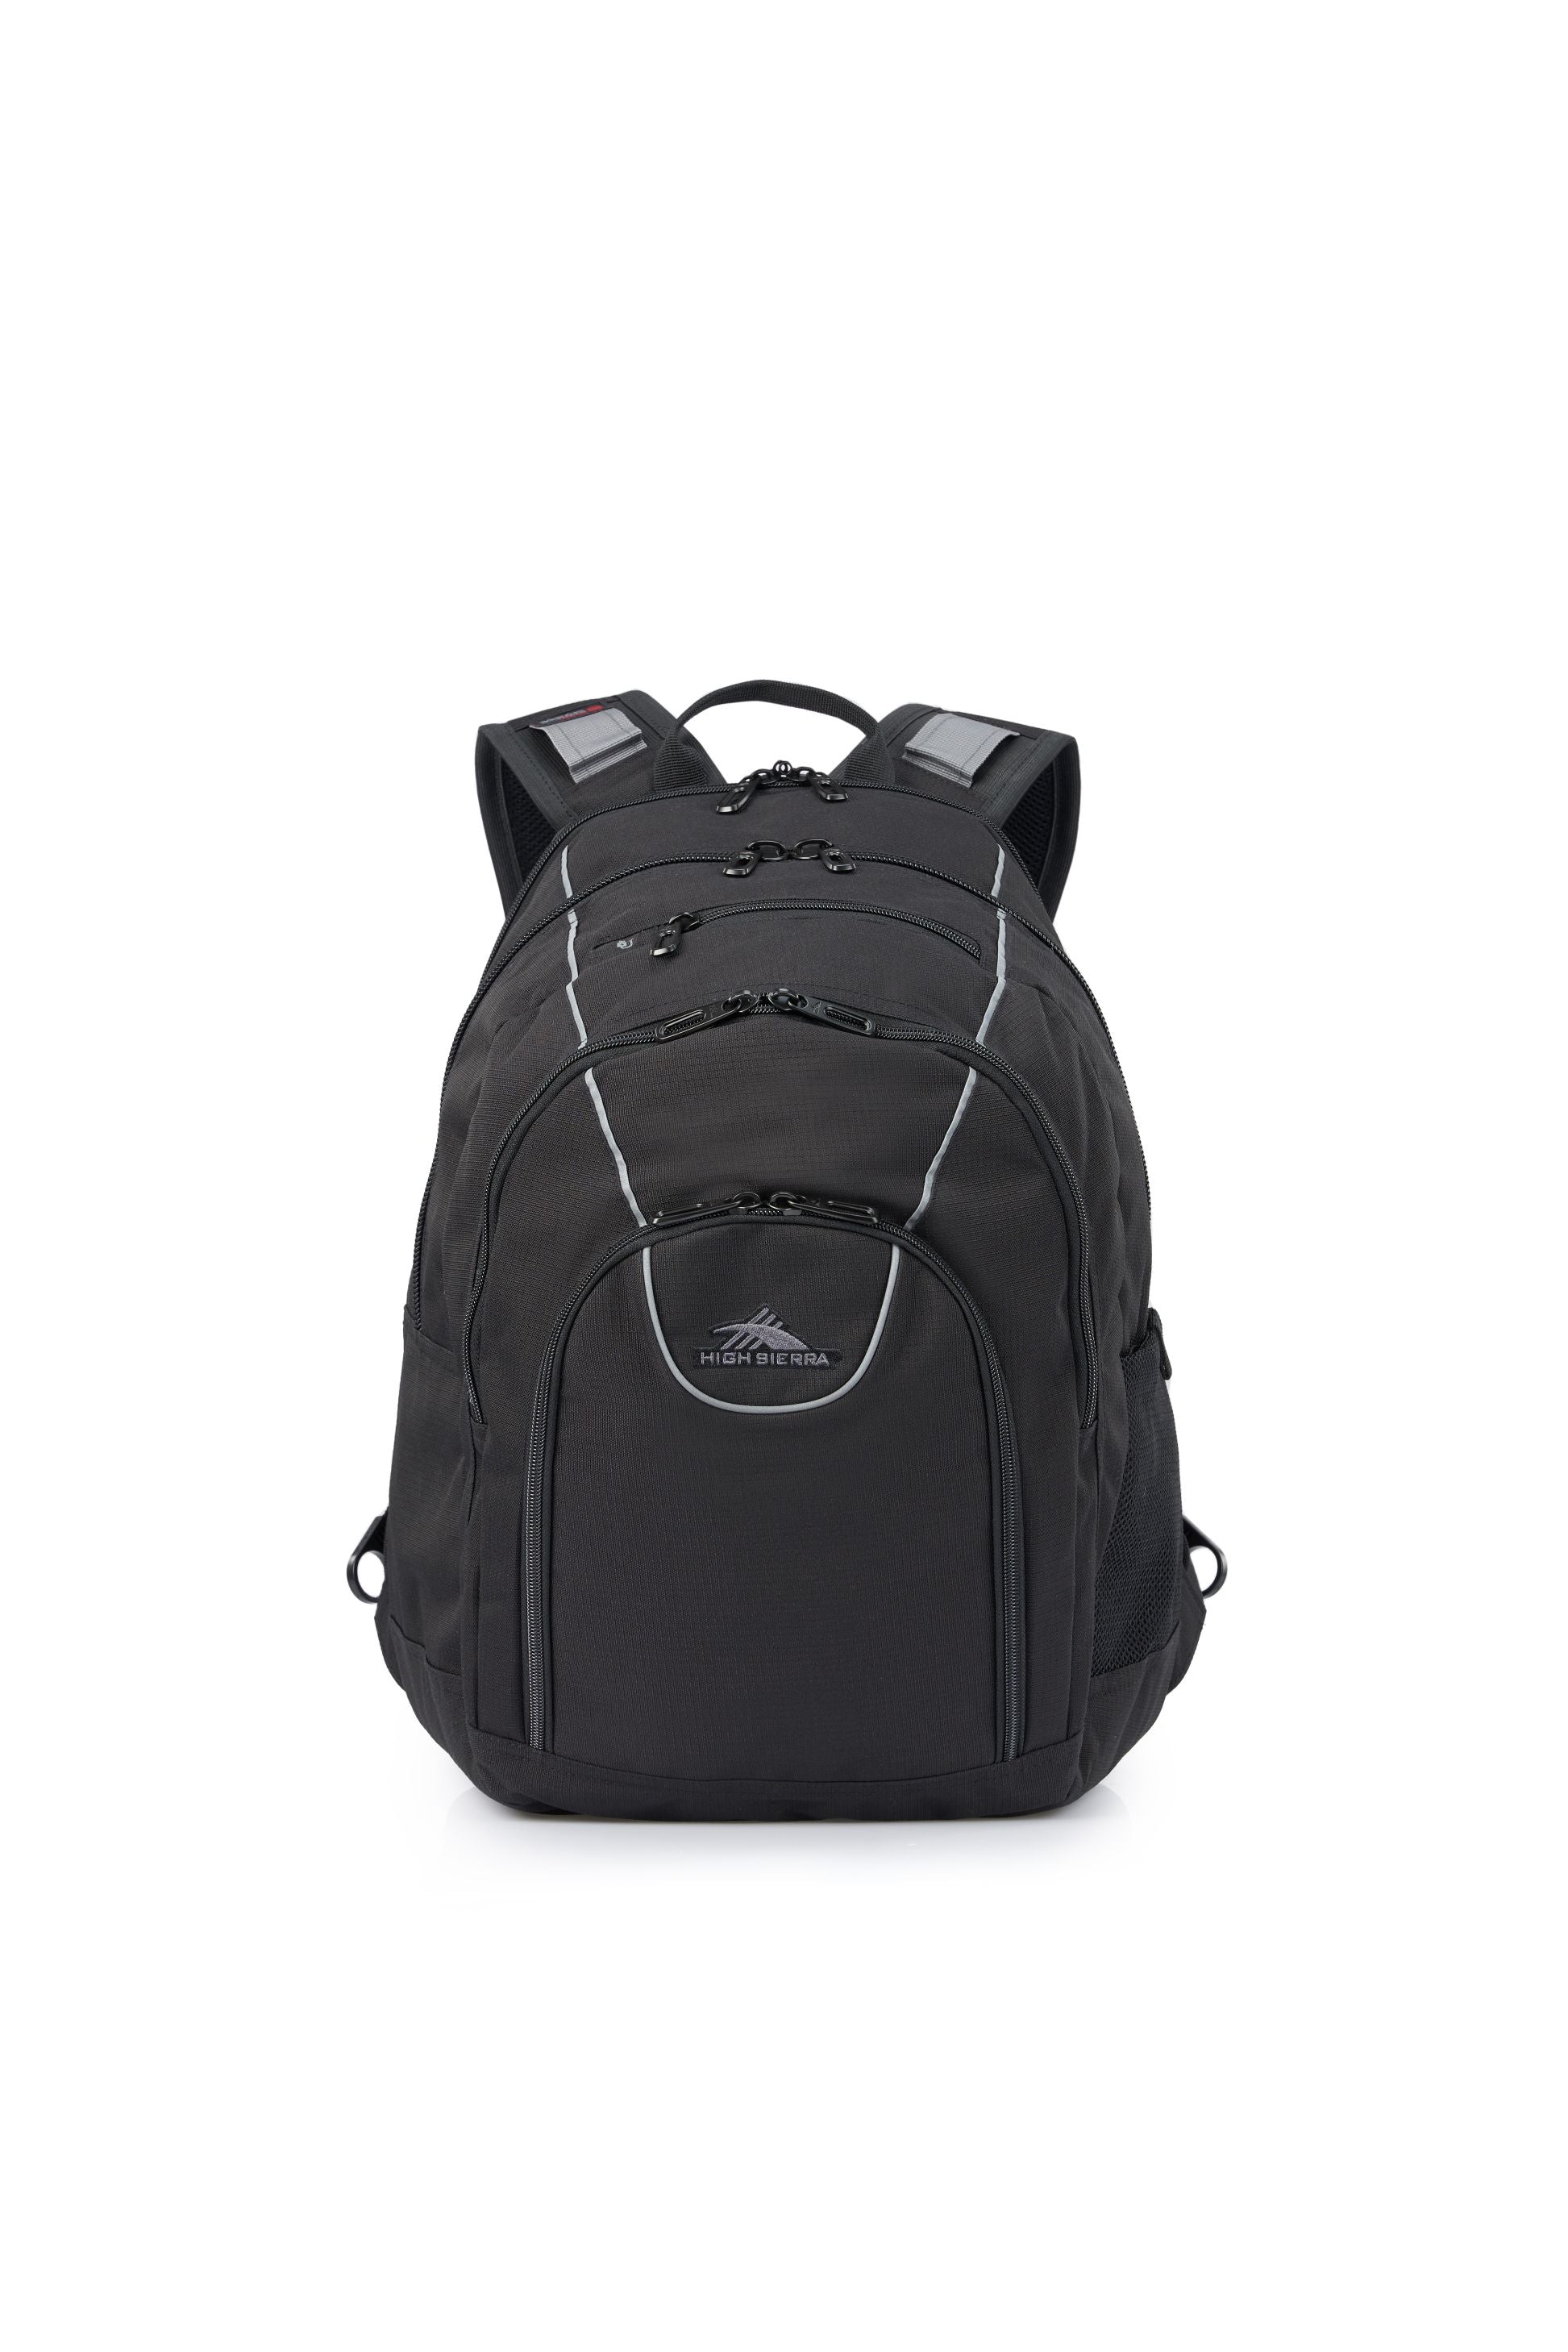 High Sierra - Academy 3.0 Backpack Eco - Black-1